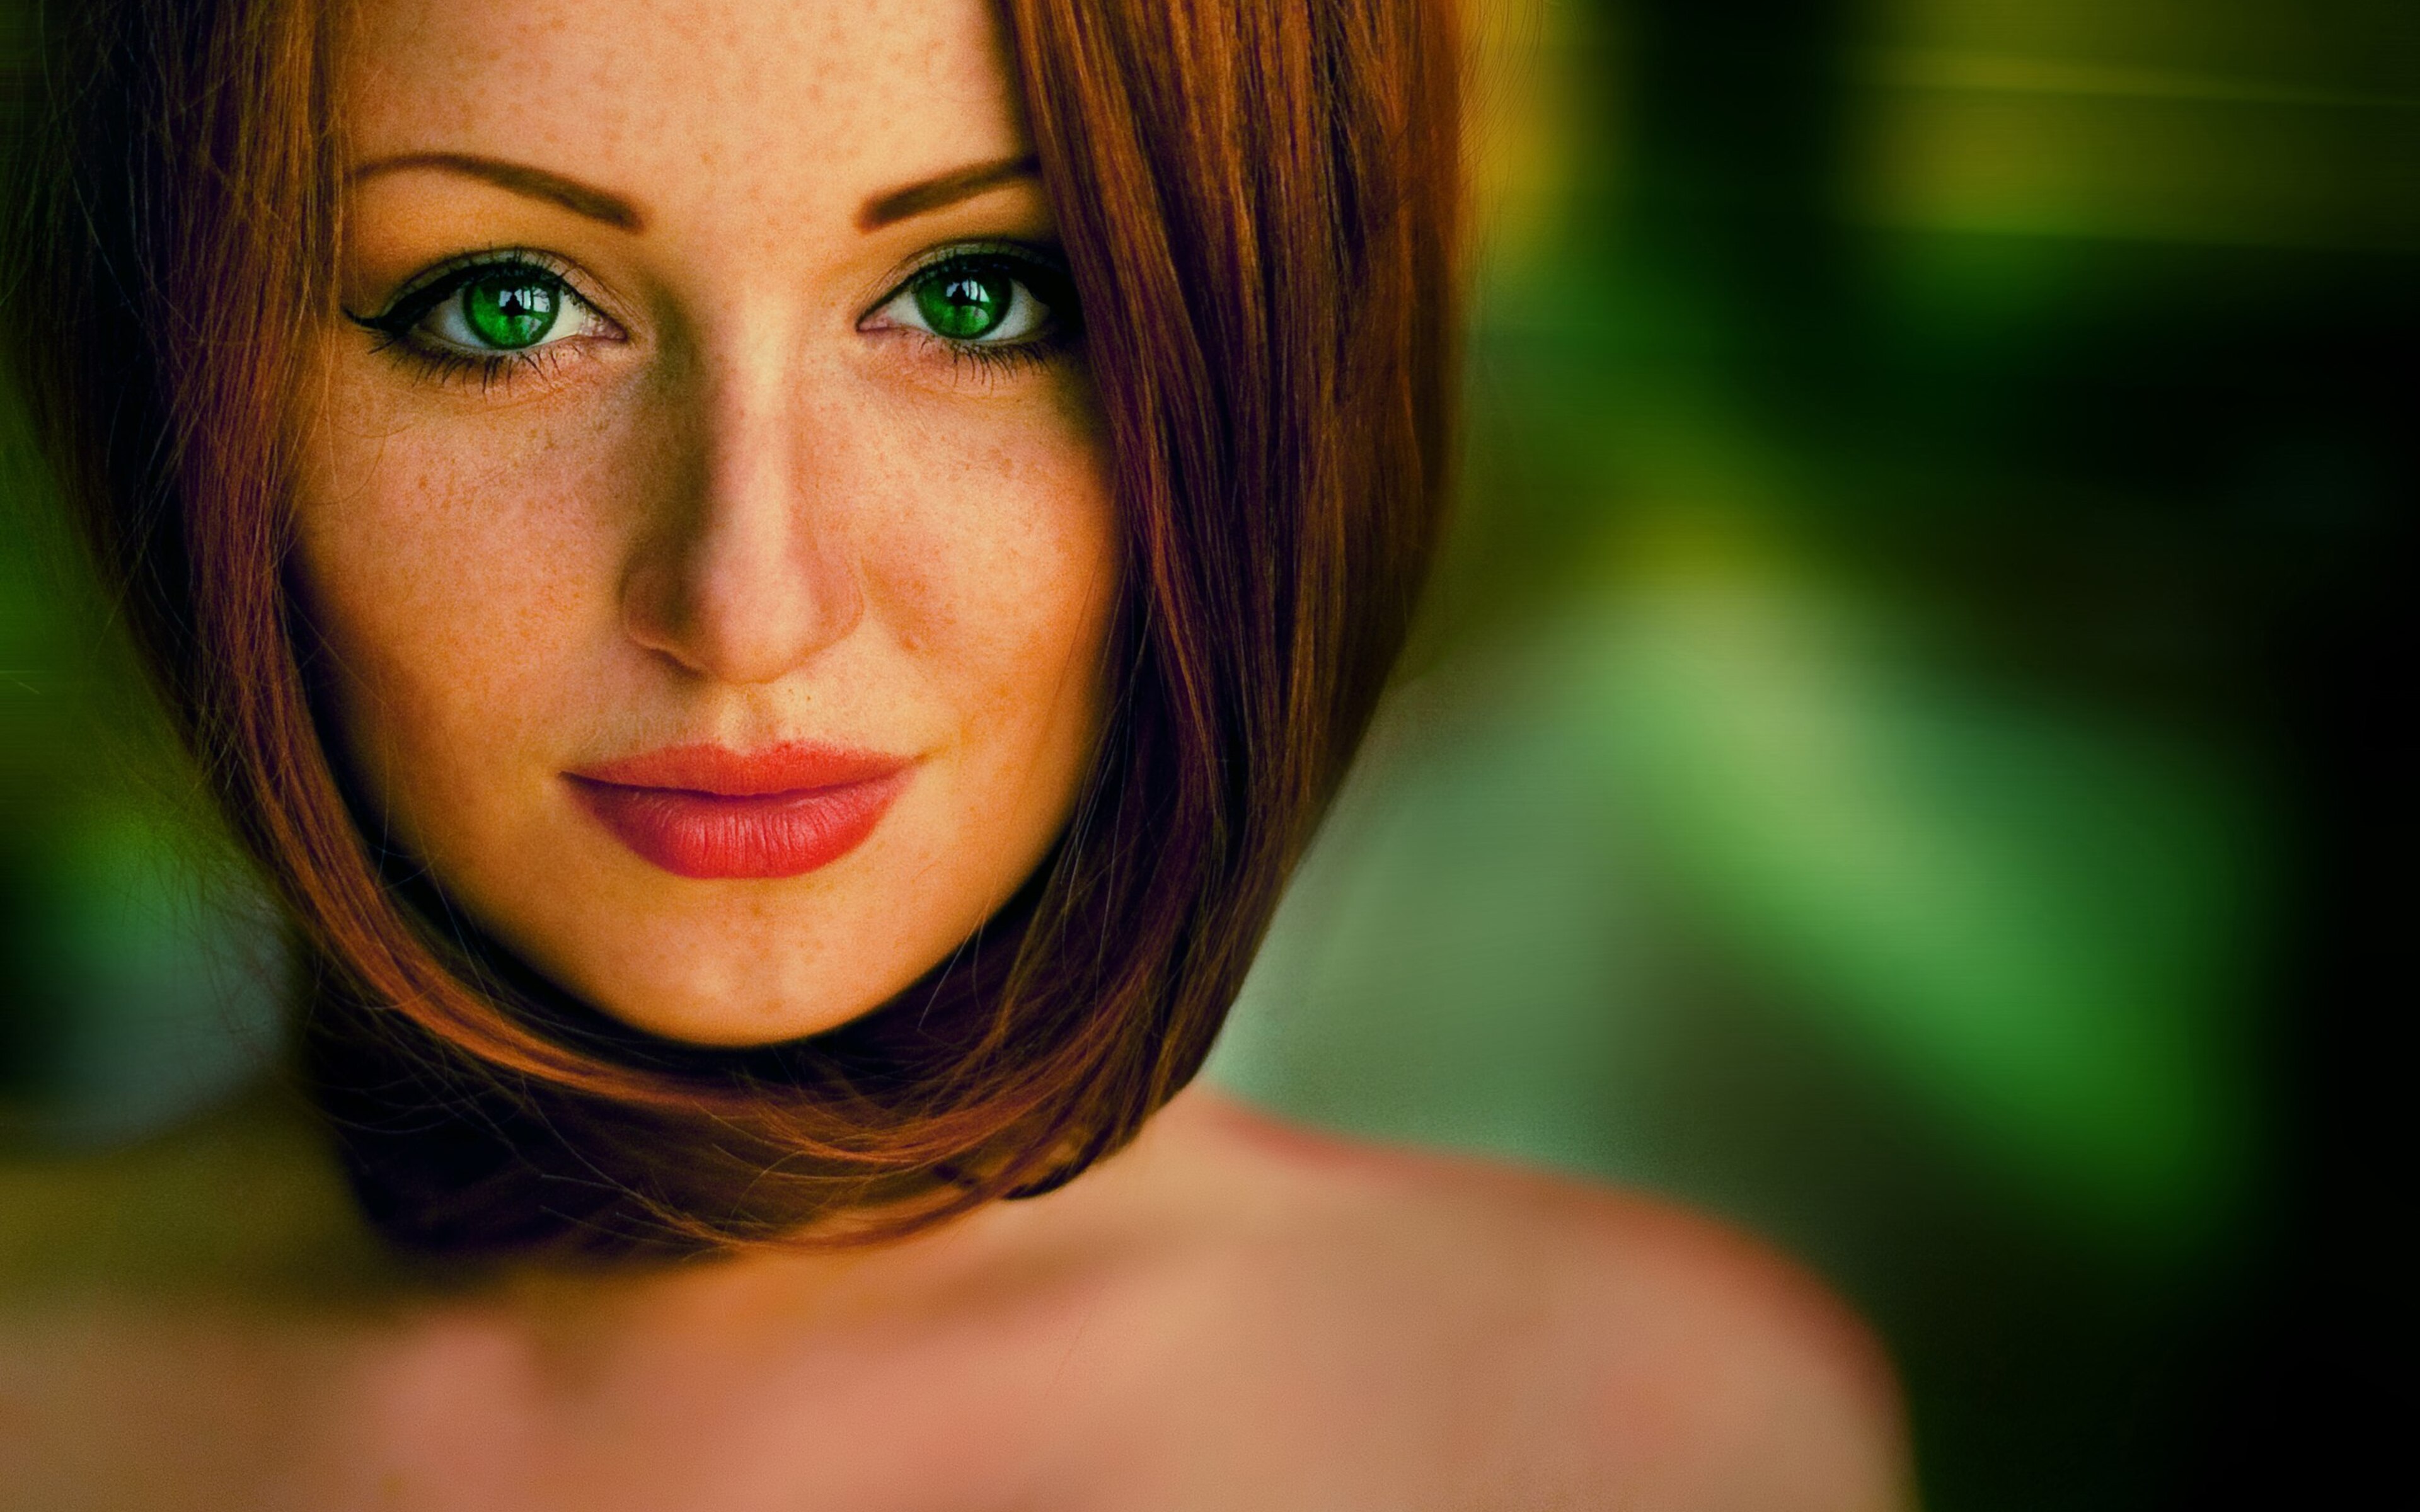 Красивая девушка с зелеными глазами. Девушка с зеленымигллазами. Зелёные глаза. Девушка с зверинимы глазами.